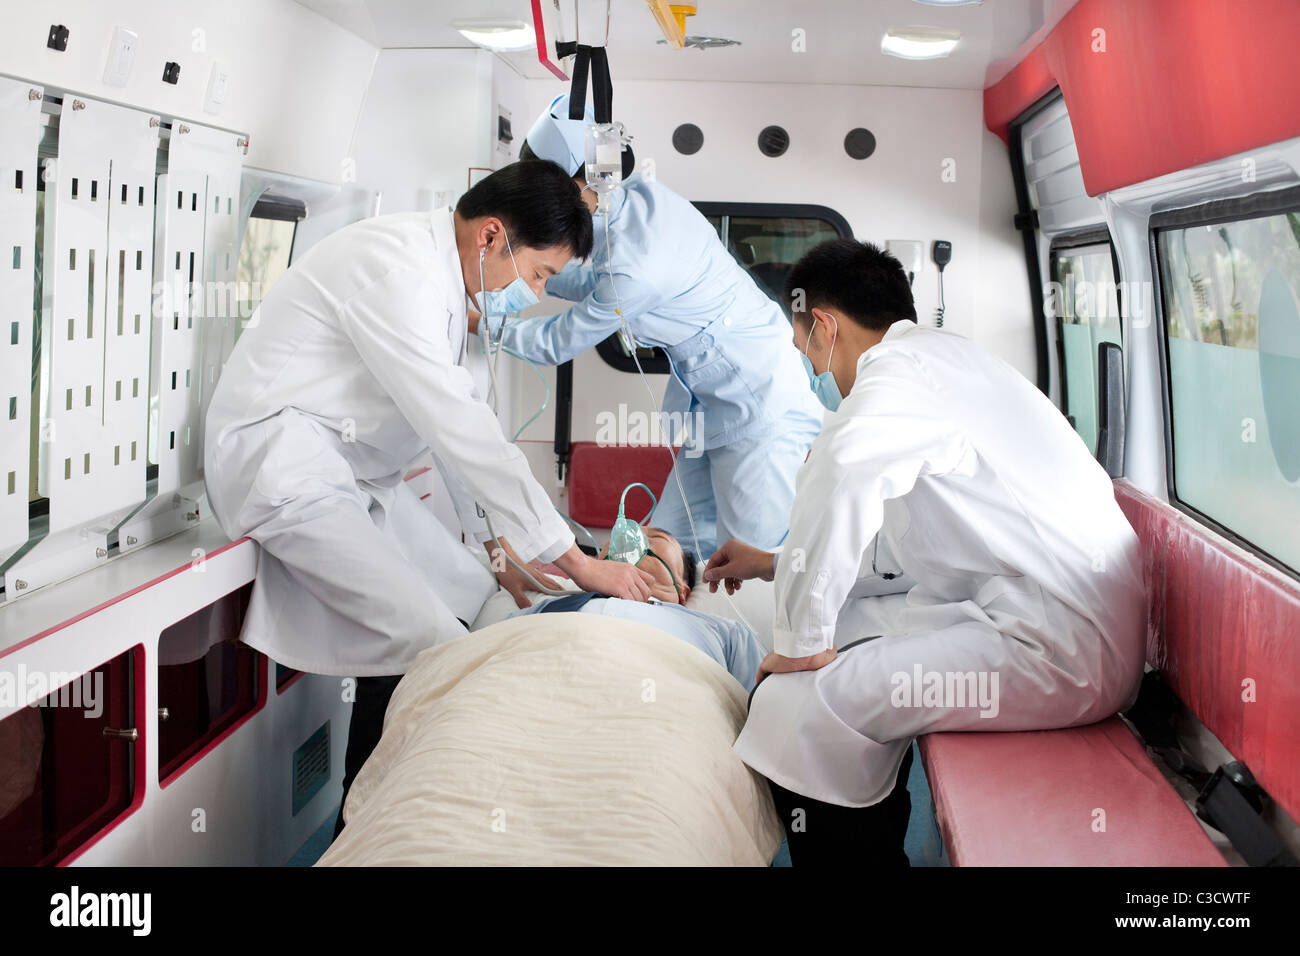 Les médecins de traiter un patient dans une ambulance Banque D'Images